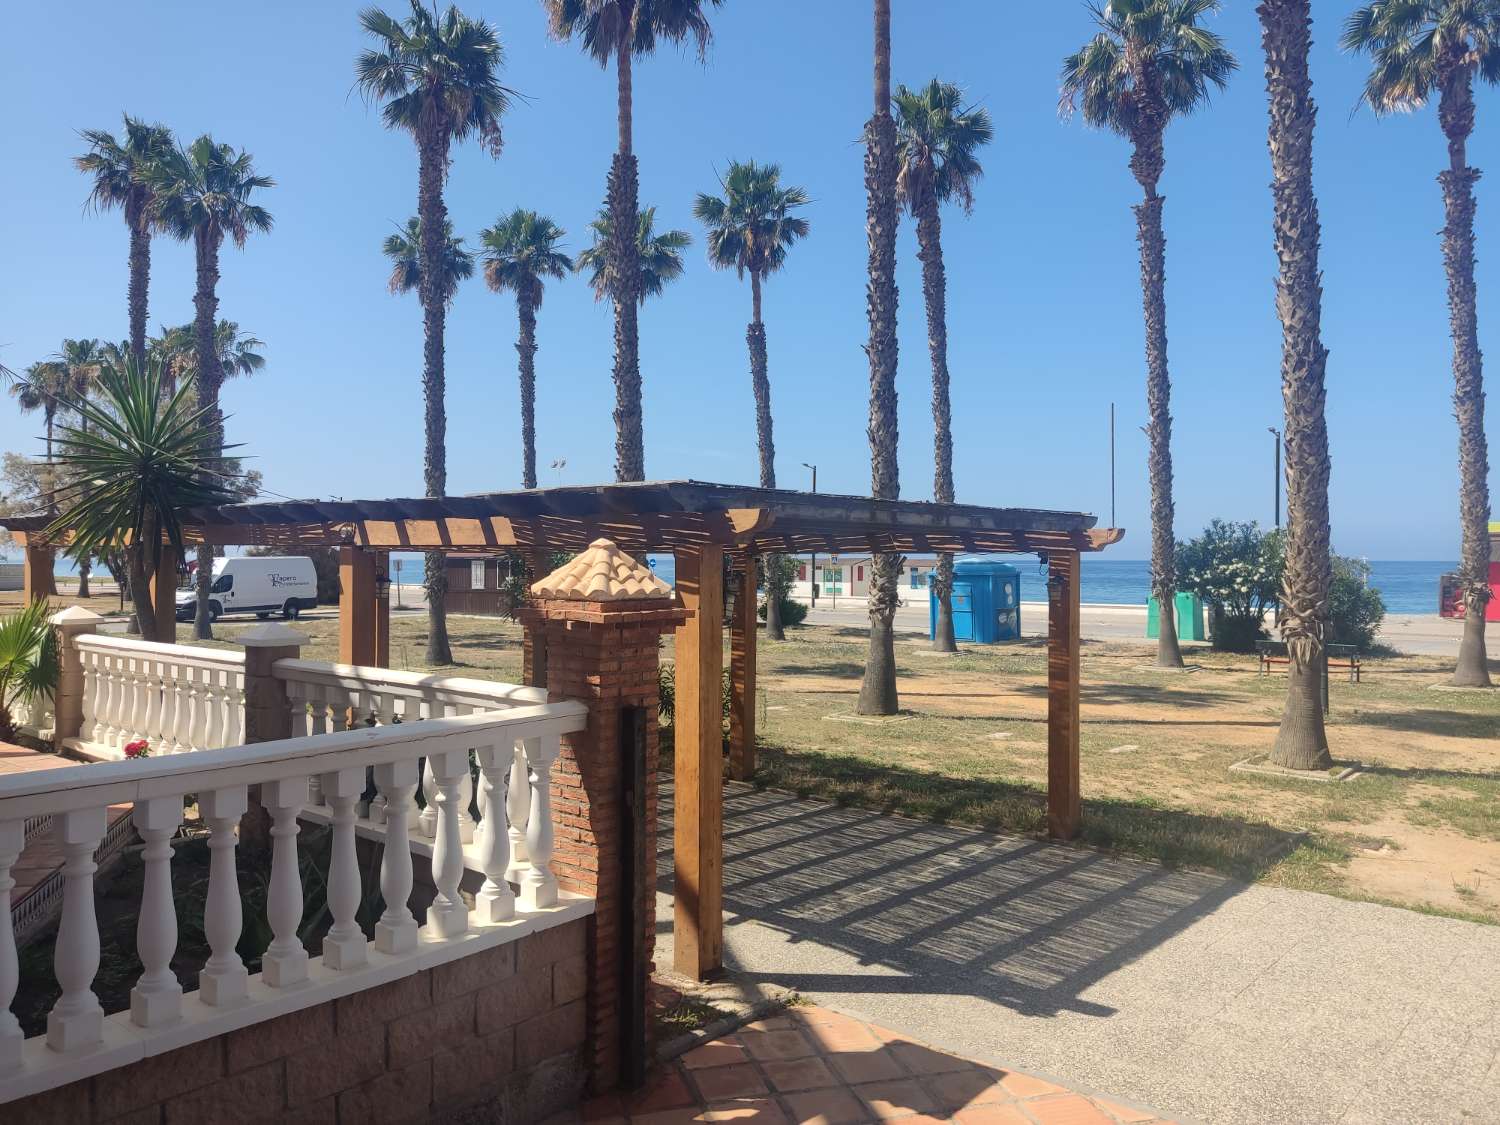 Magnifico Local Comercial en Primera línea de Playa destinado a hostelería